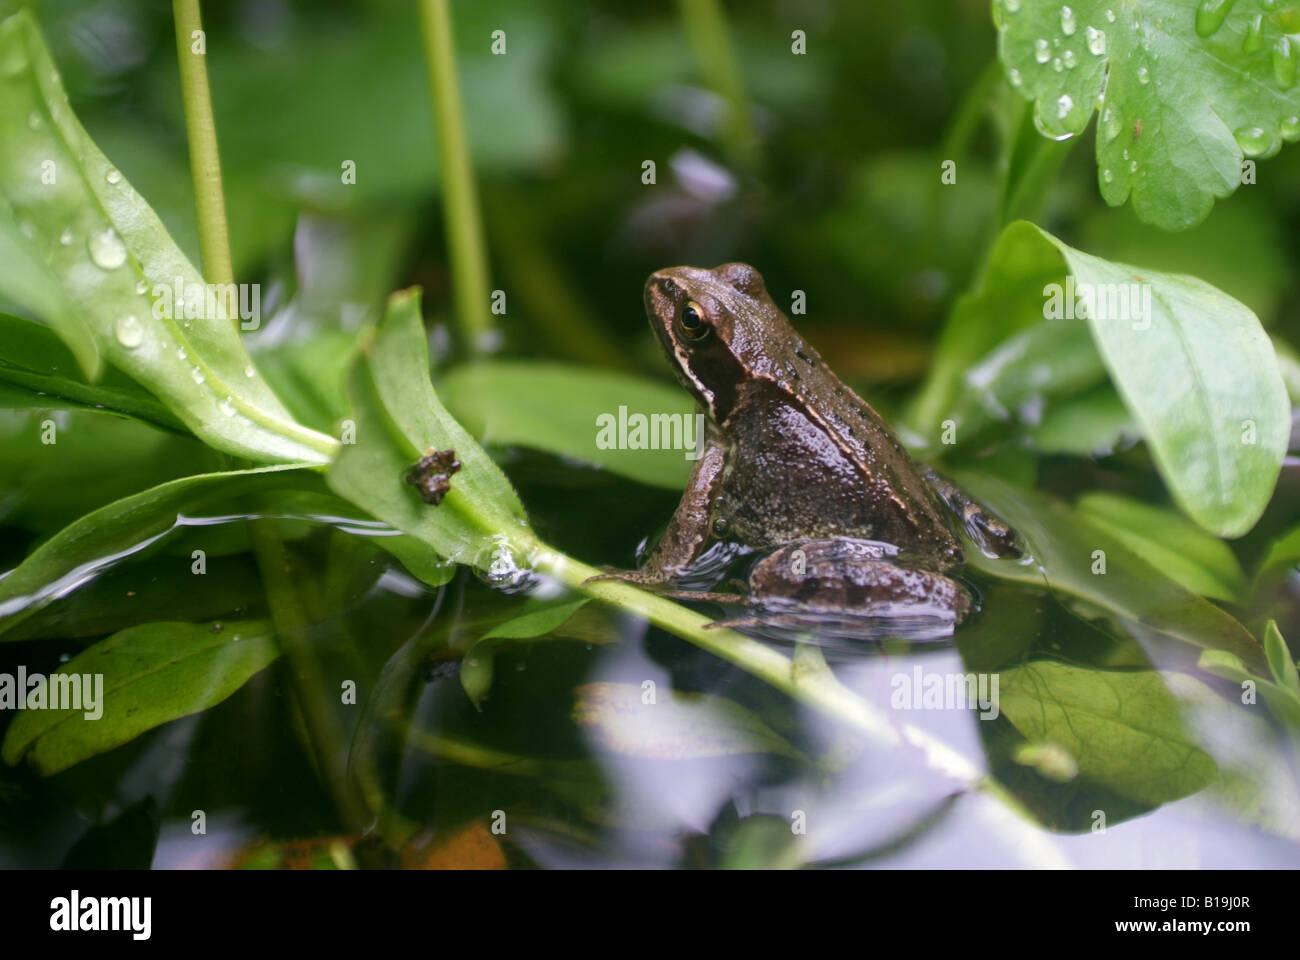 A Common Frog, Rana temporaria in a small garden pond. Stock Photo